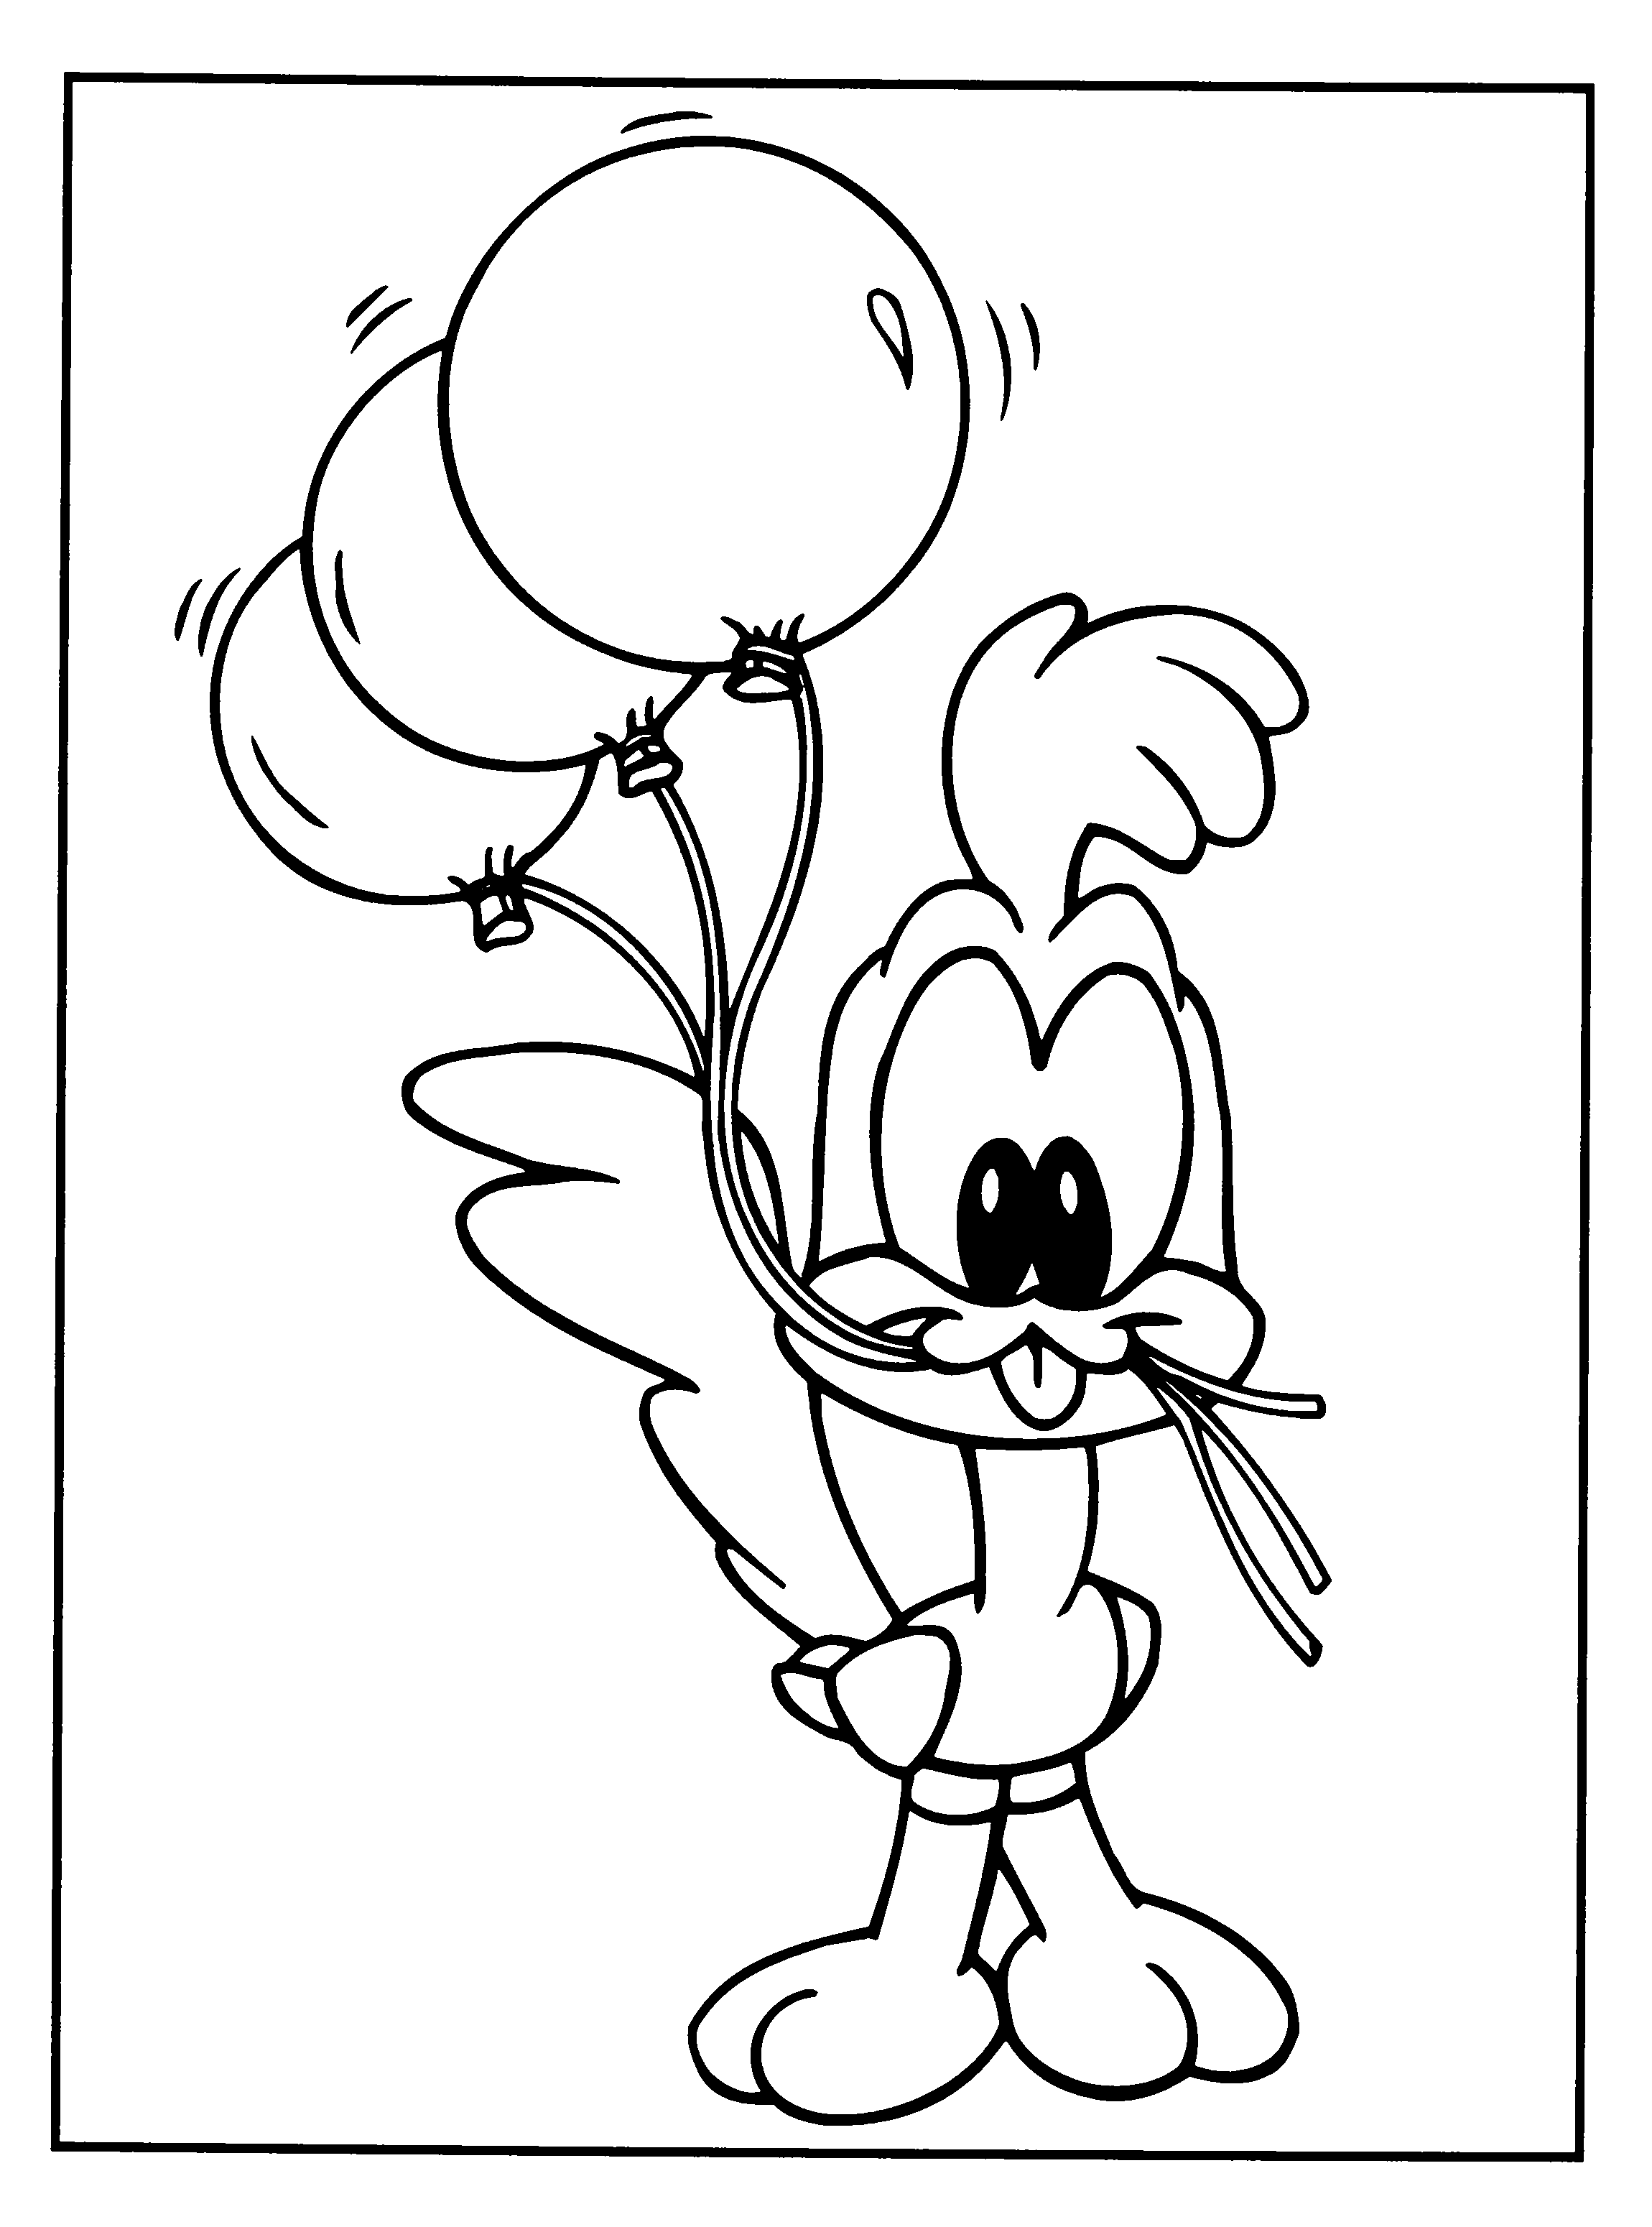 Bebe Looney Tunes Dibujos Para Colorear Disneydibujos